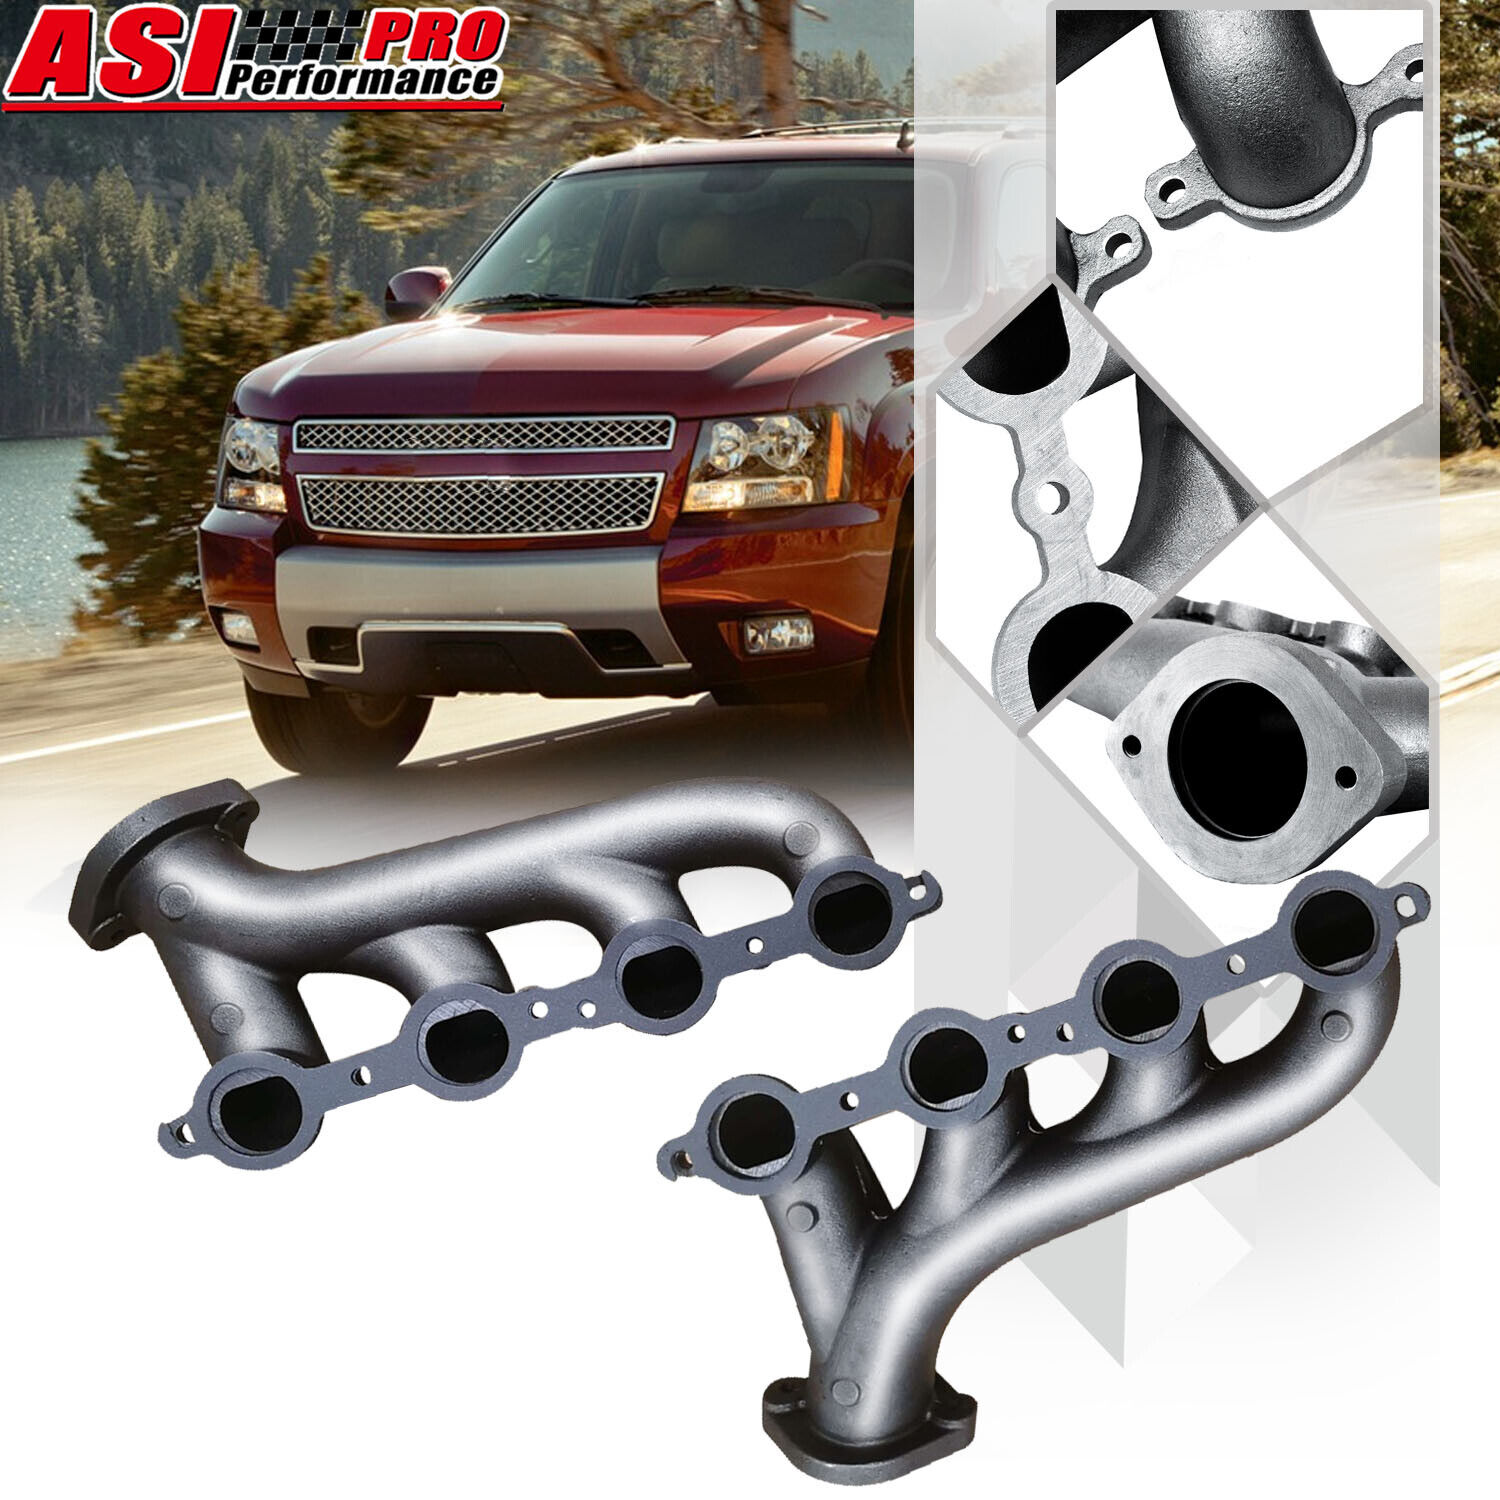 LS Swap Cast Iron Exhaust Manifold Headers For Chevrolet LS1LS2LS3 4.8L 5.3L 6.0